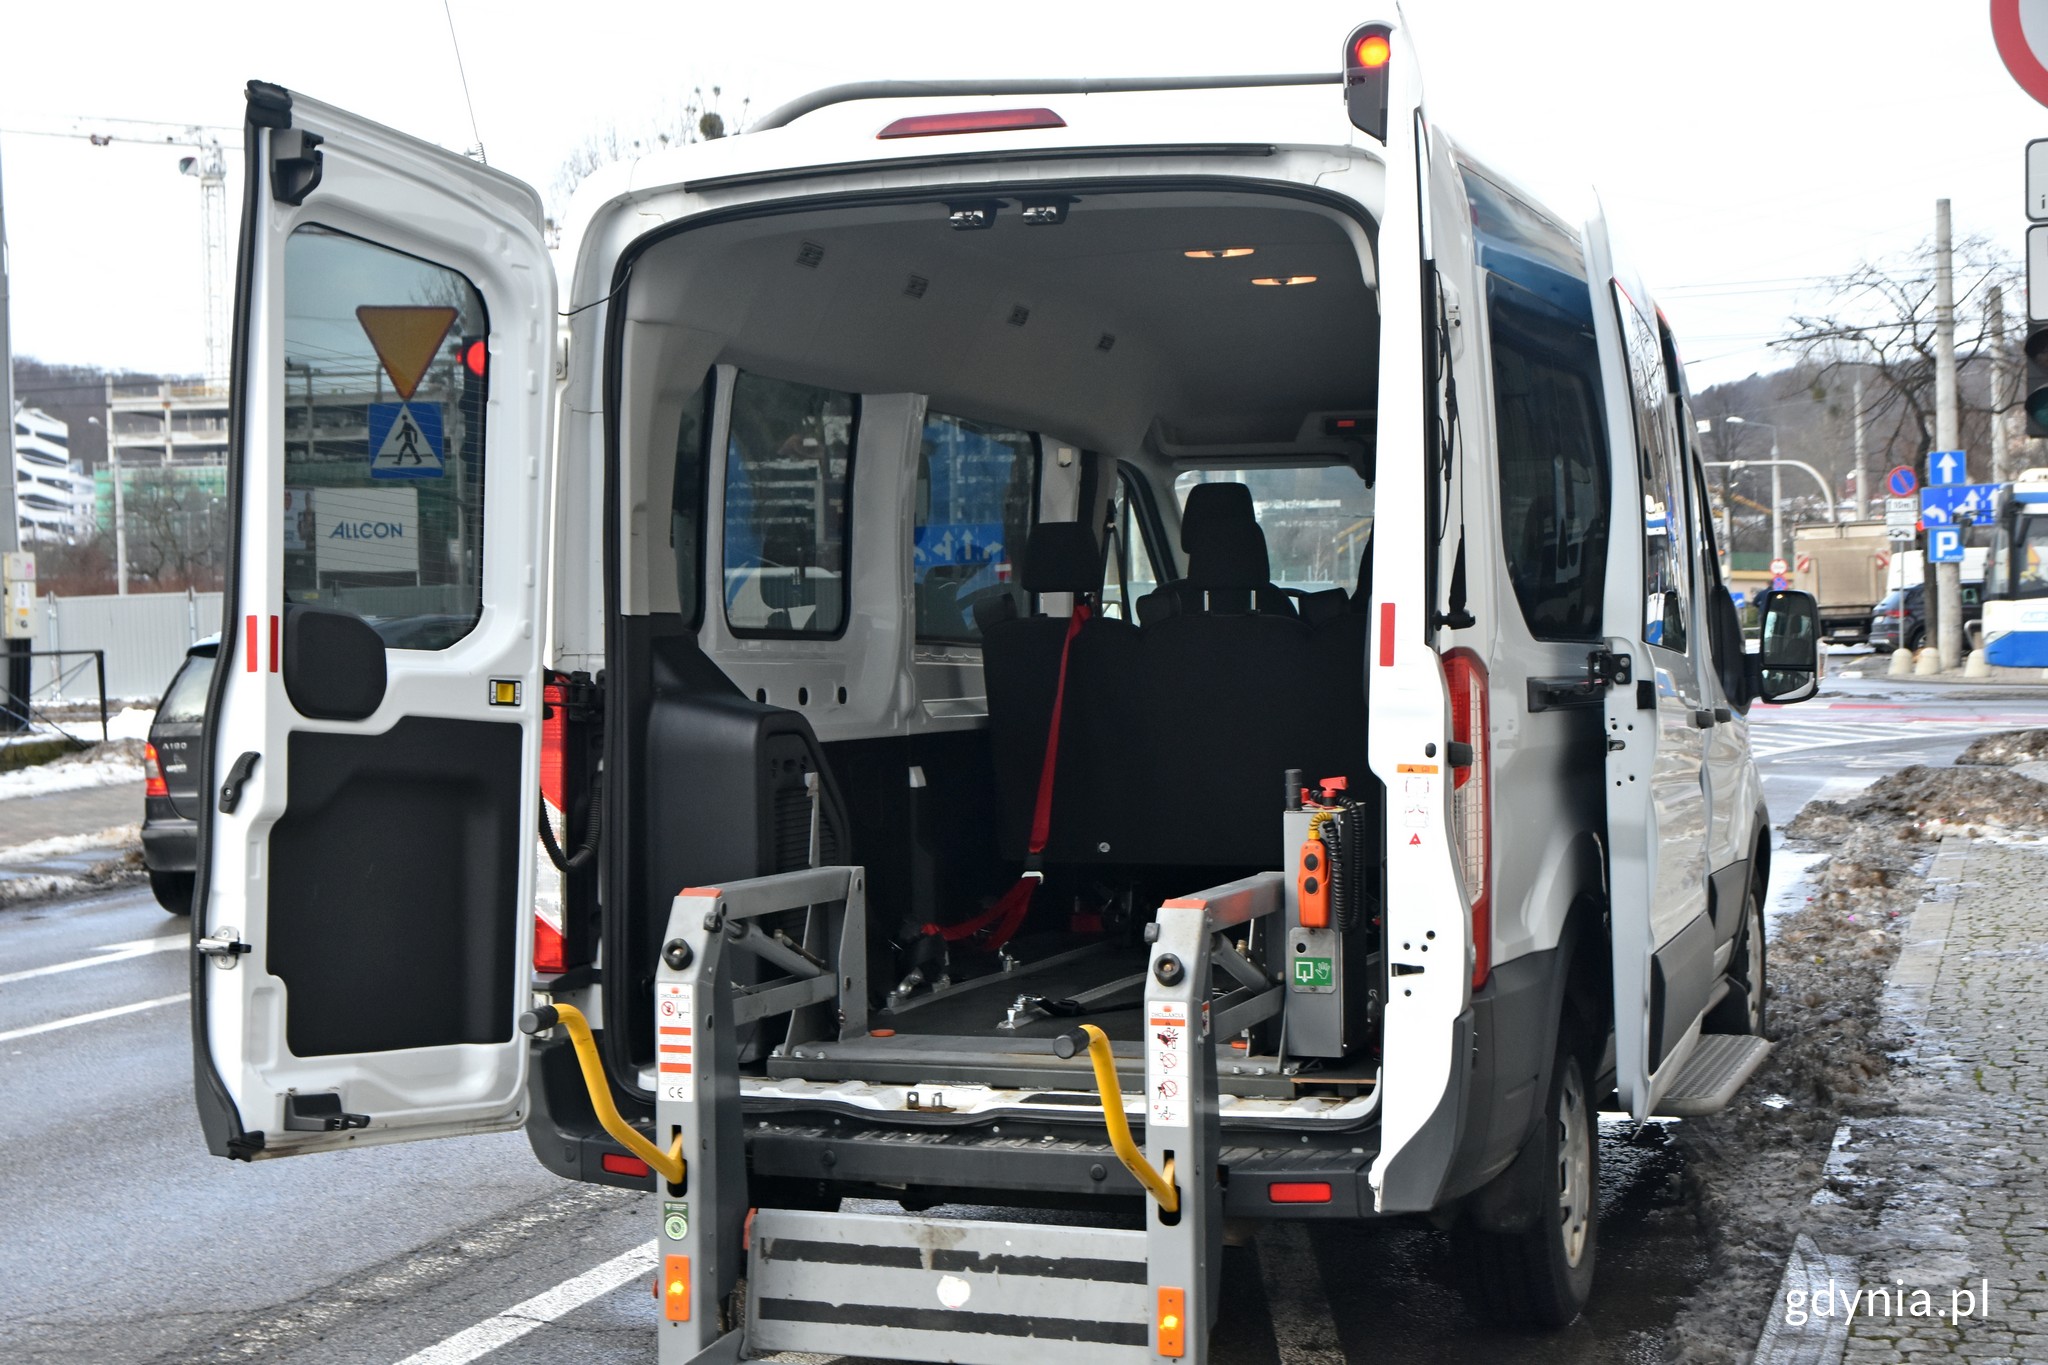 Busy dostosowane są do transportu niezbędnego sprzętu takiego jak kule, balkoniki czy wózek inwalidzki. Na zdjęciu widoczny jest bagażnik busa. Fot. Magdalena Czernek 